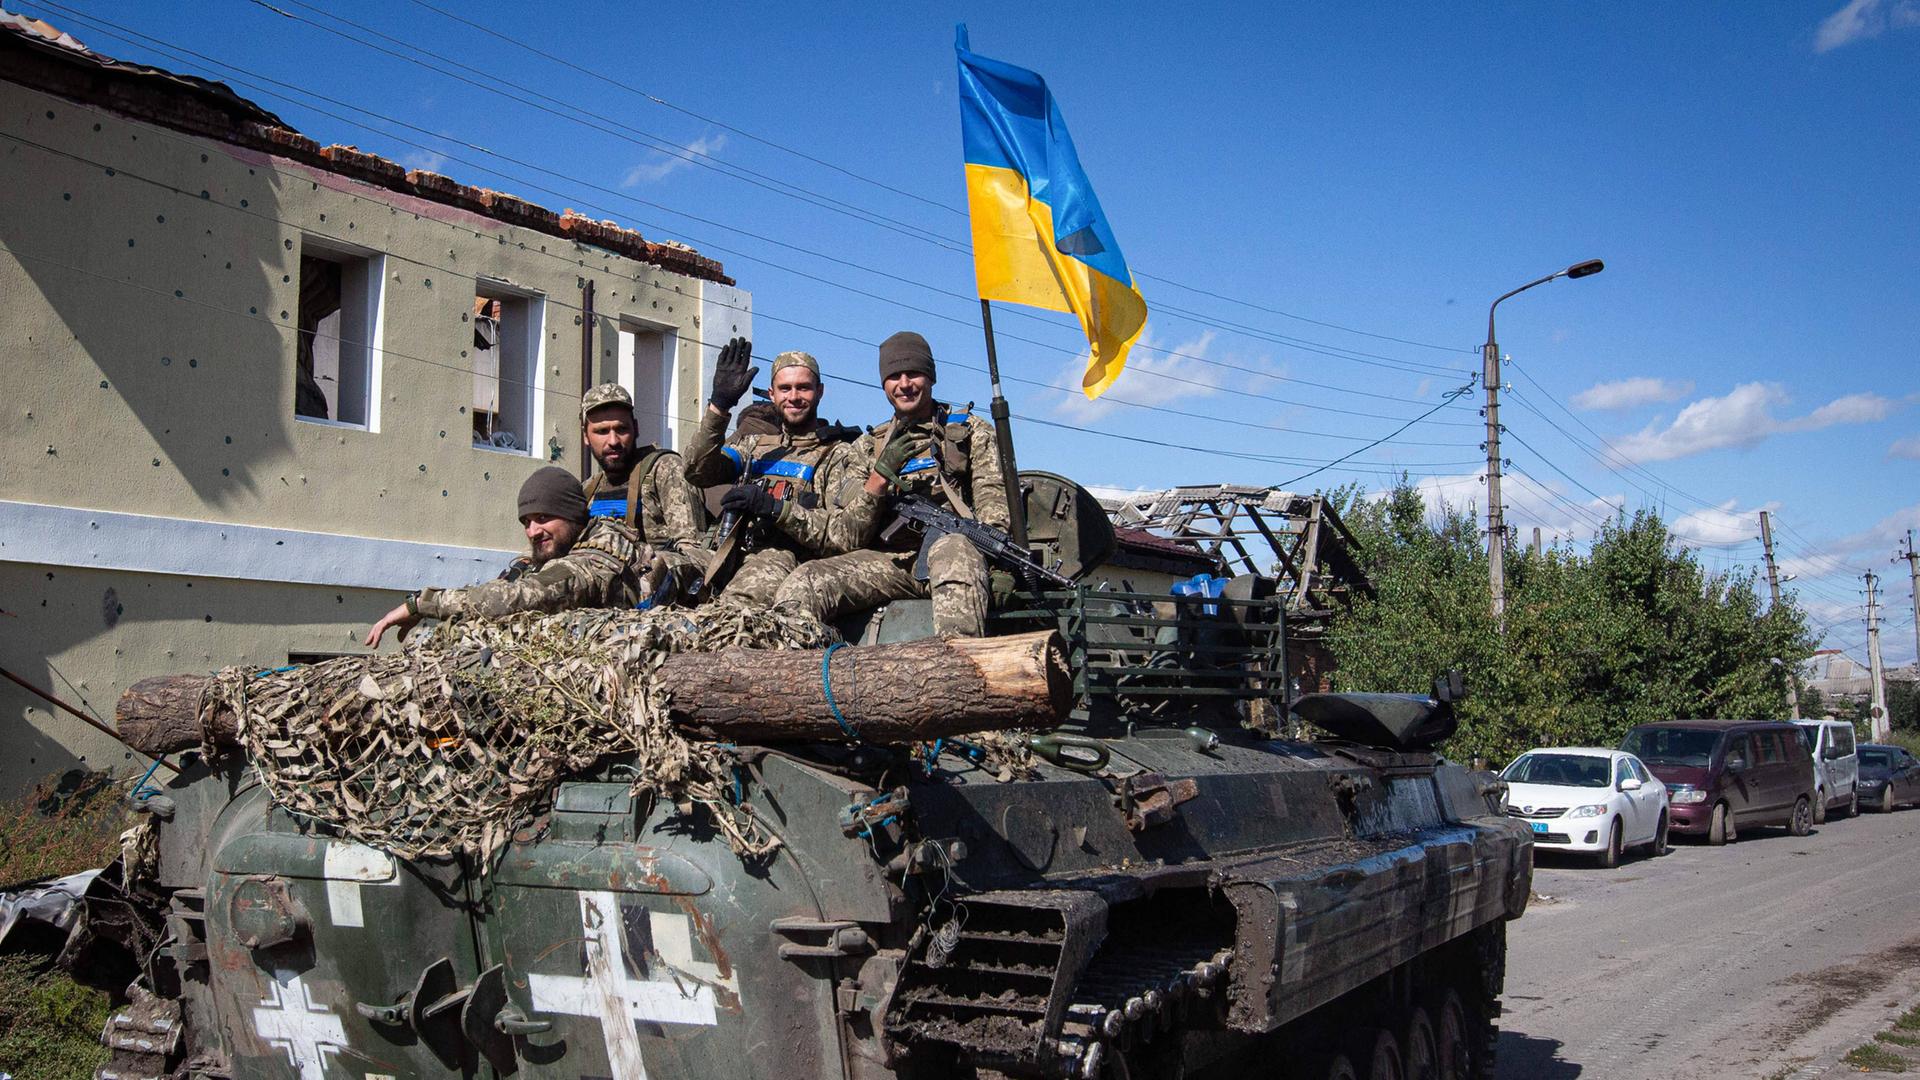 Ukrainische Soldaten fahren in einem gepanzerten Mannschaftswagen.